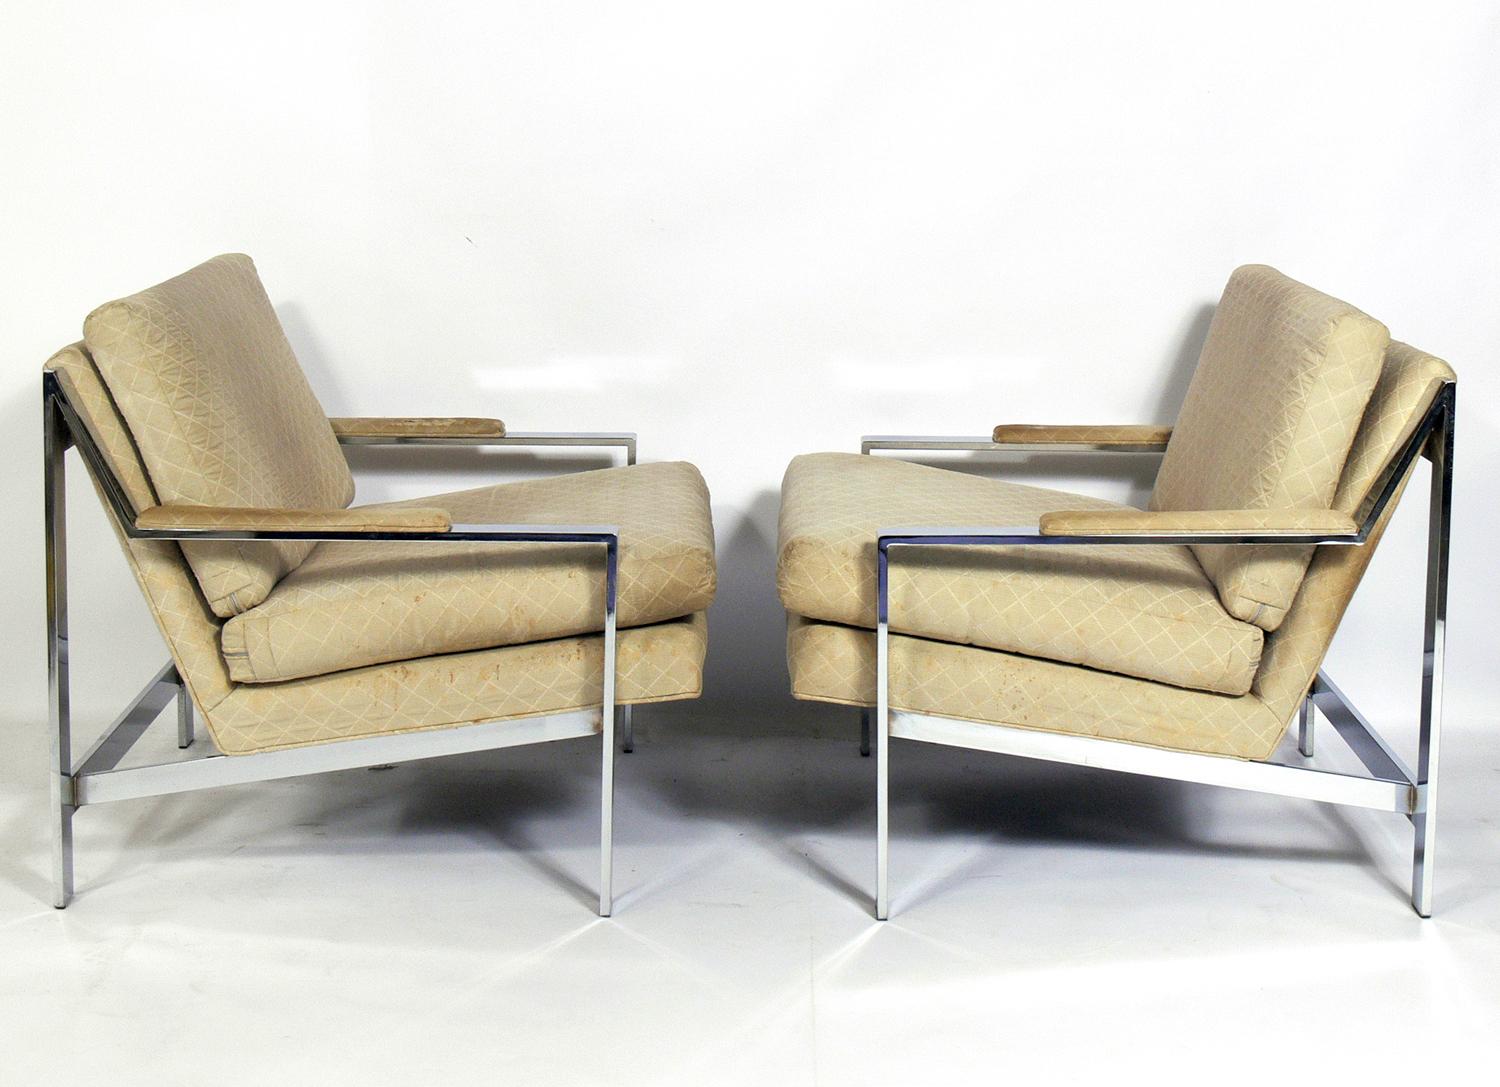 Zwei verchromte Loungesessel von Cy Mann, amerikanisch, ca. 1960er Jahre. Jahrelang wurden diese Stühle Milo Baughman zugeschrieben. Diese Stühle werden derzeit neu gepolstert und können ohne Aufpreis mit Ihrem Stoff versehen werden. Der unten